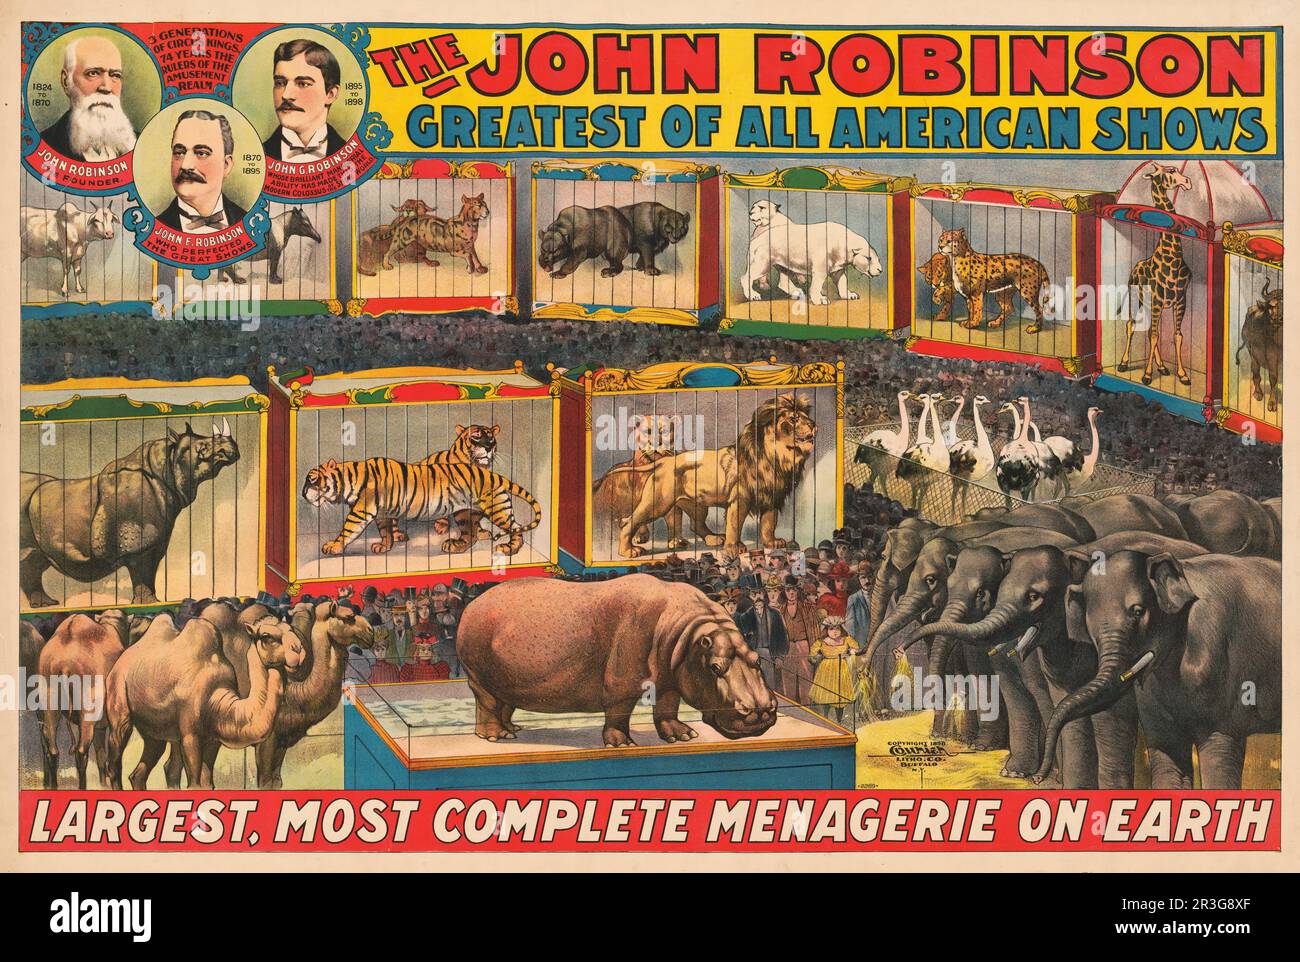 La Ménagerie la plus grande et la plus complète de John Robinson sur Terre, affiche de cirque d'époque, vers 1898. Banque D'Images